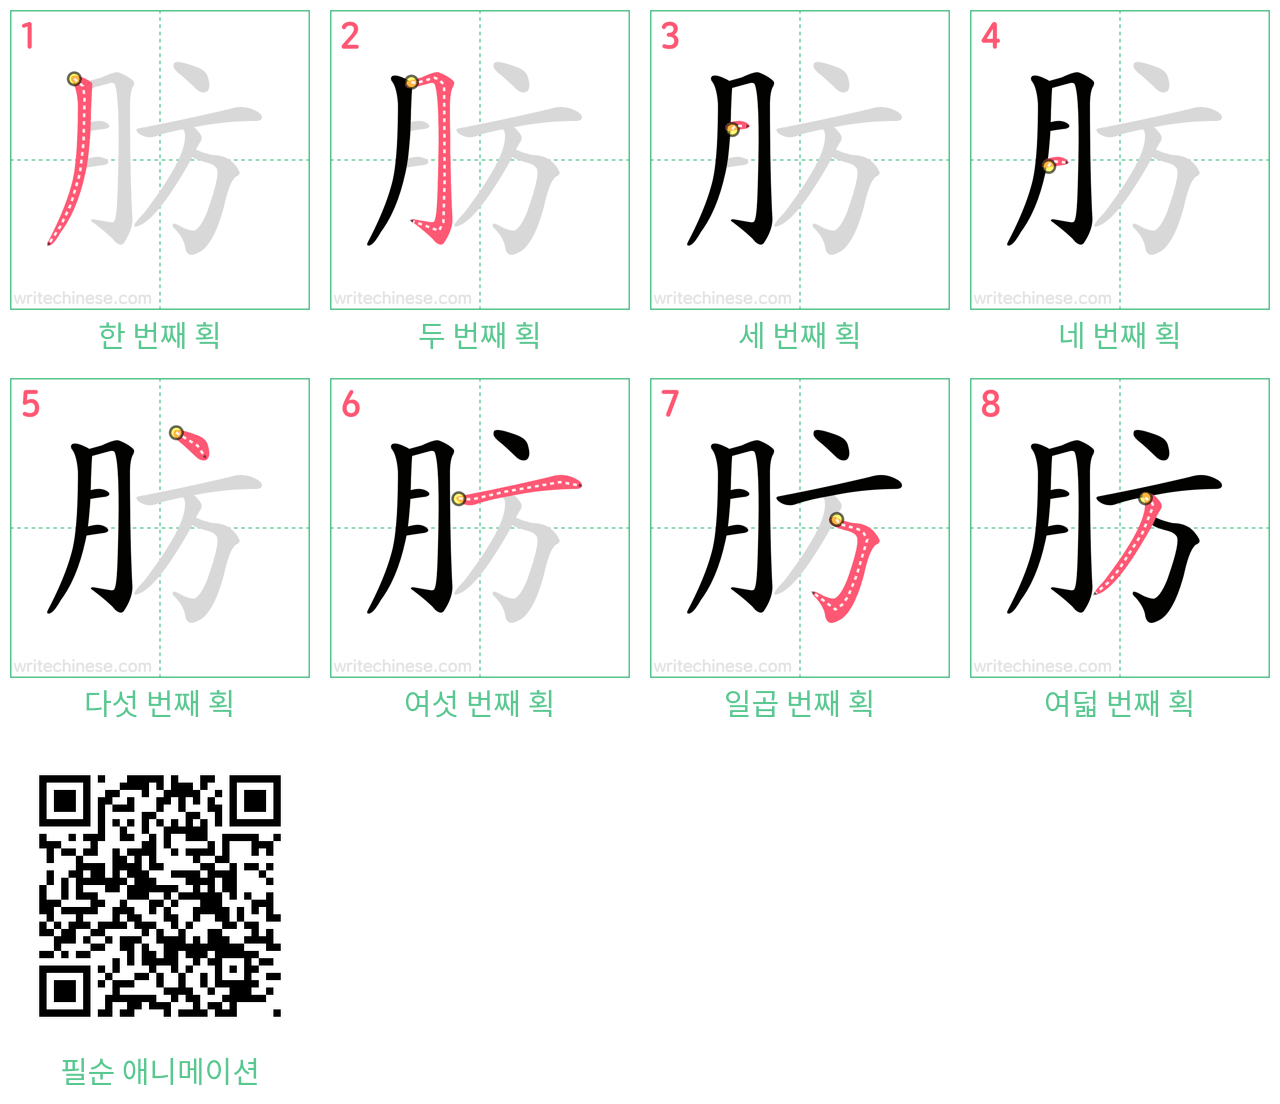 肪 step-by-step stroke order diagrams